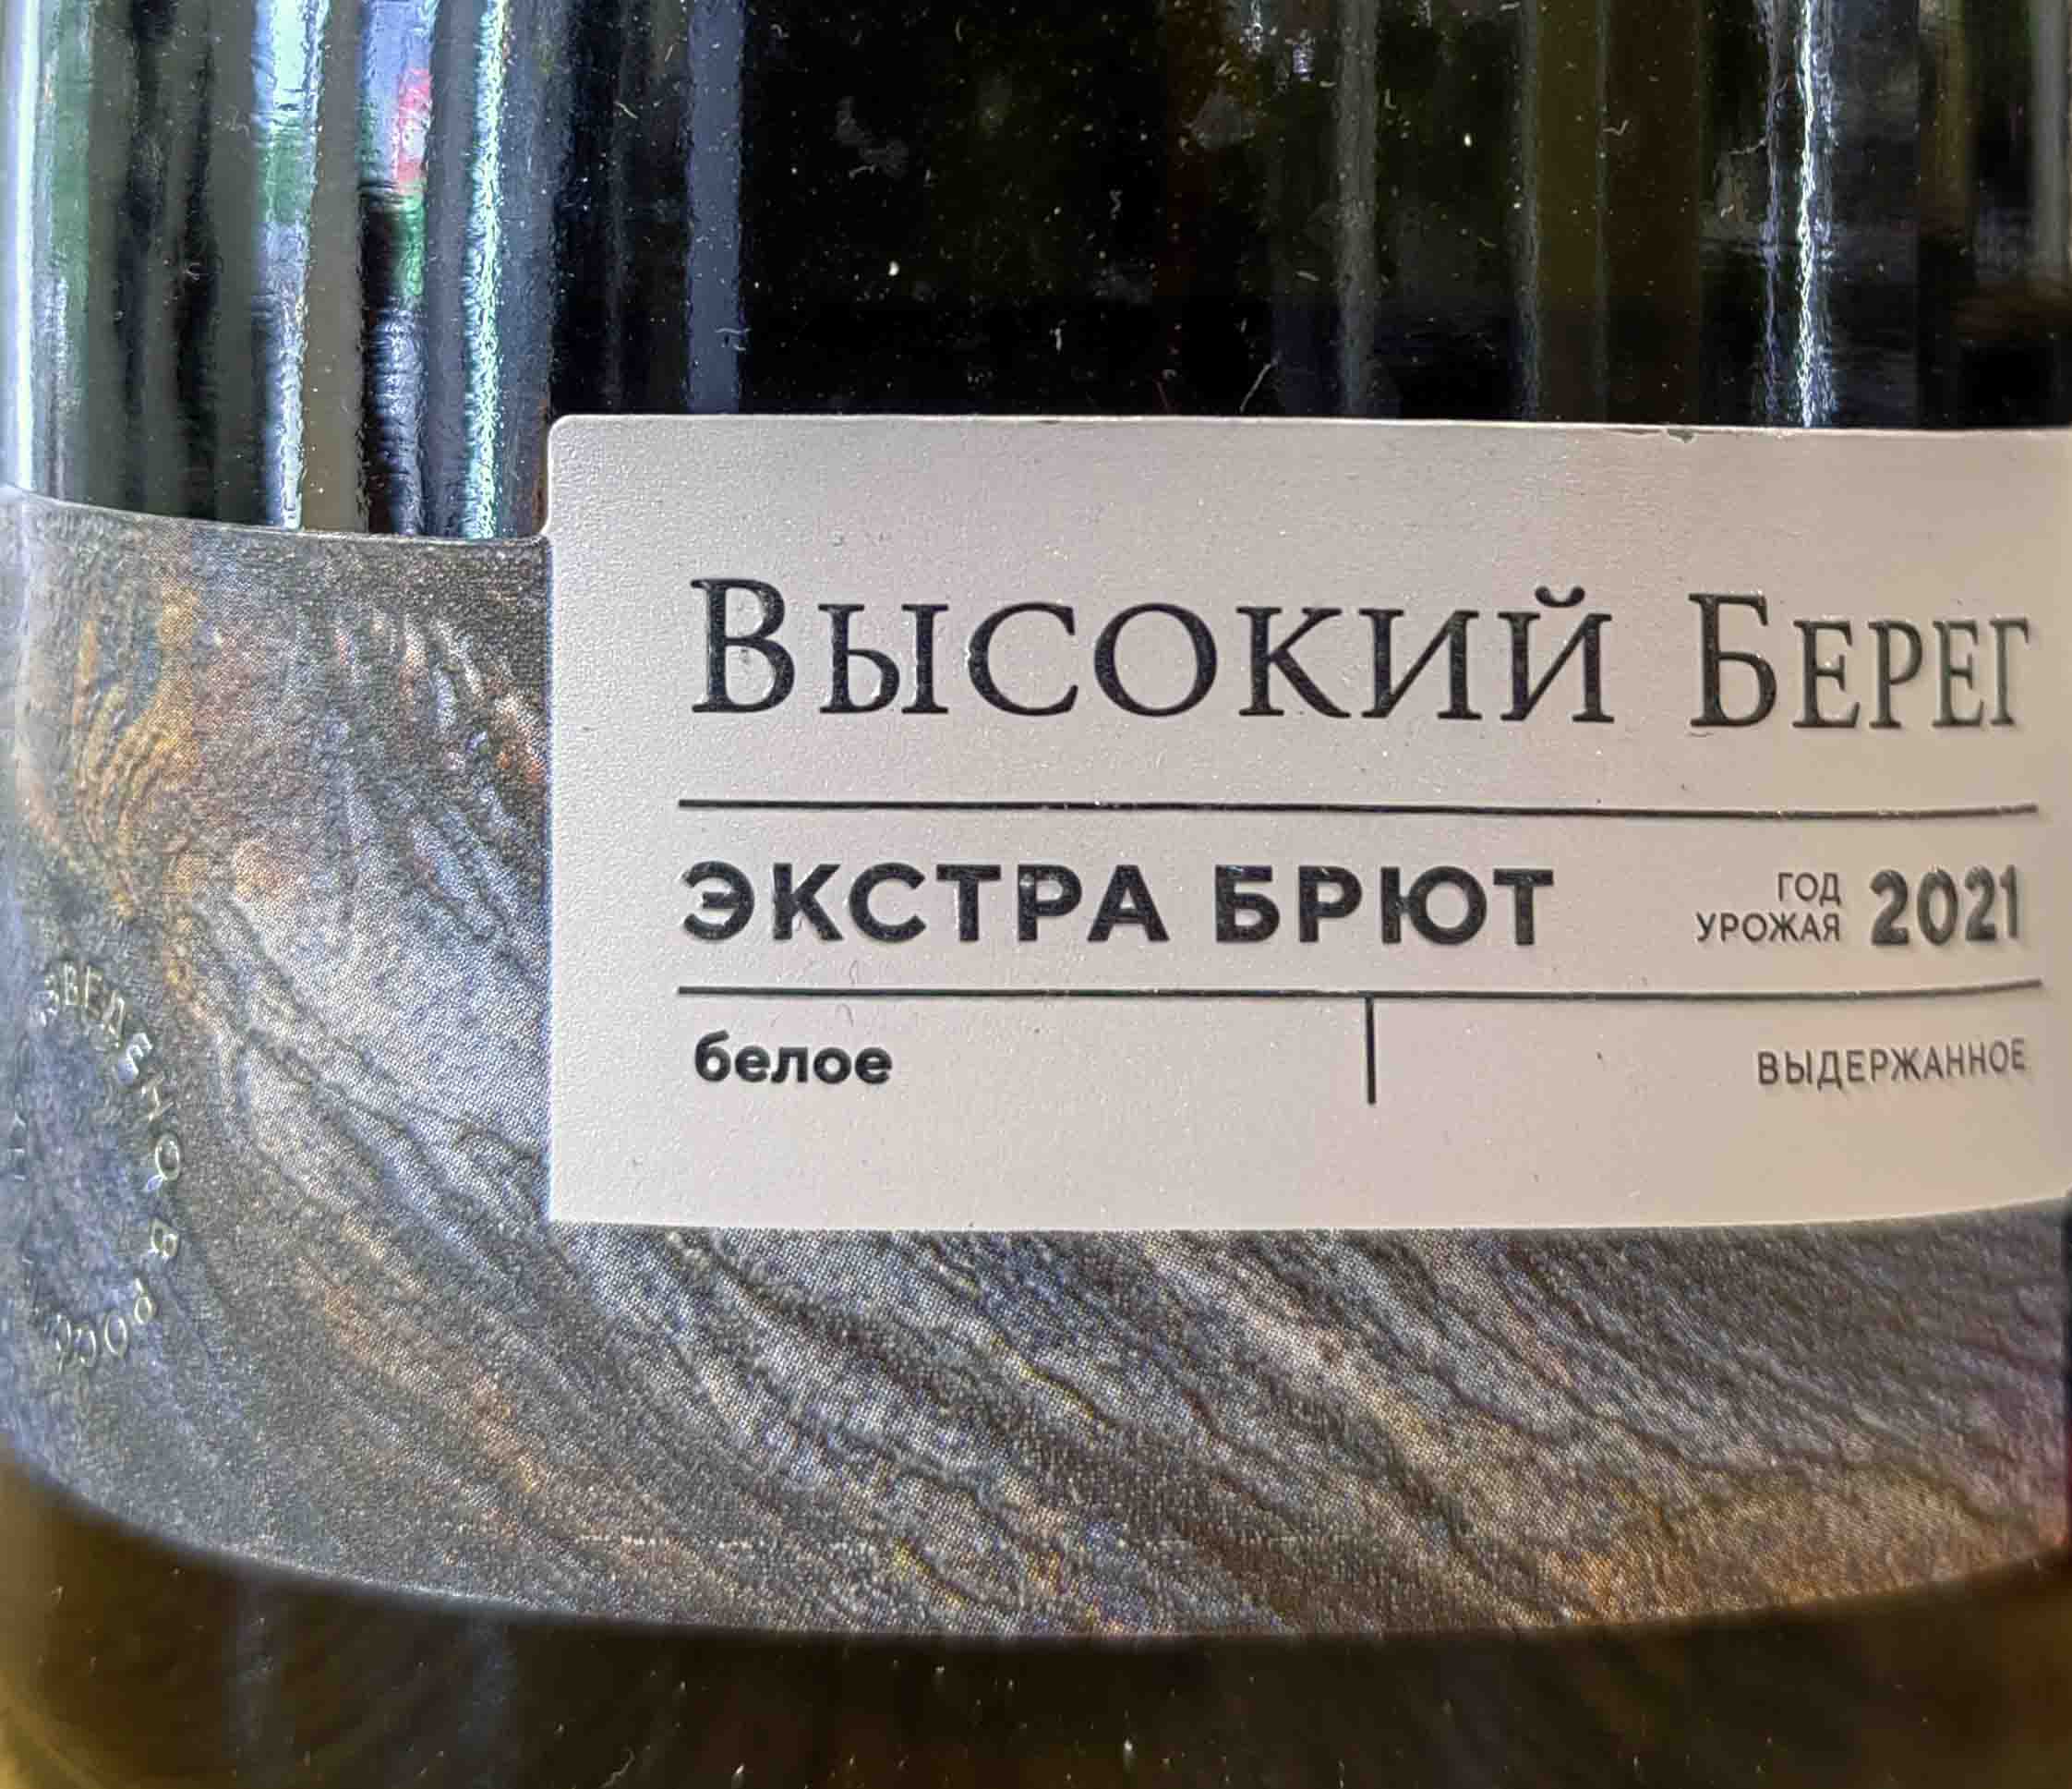 Этикетка Российское игристое вино Кубань выдержанное экстра брют белое Высокий берег 0,75л, 2020г